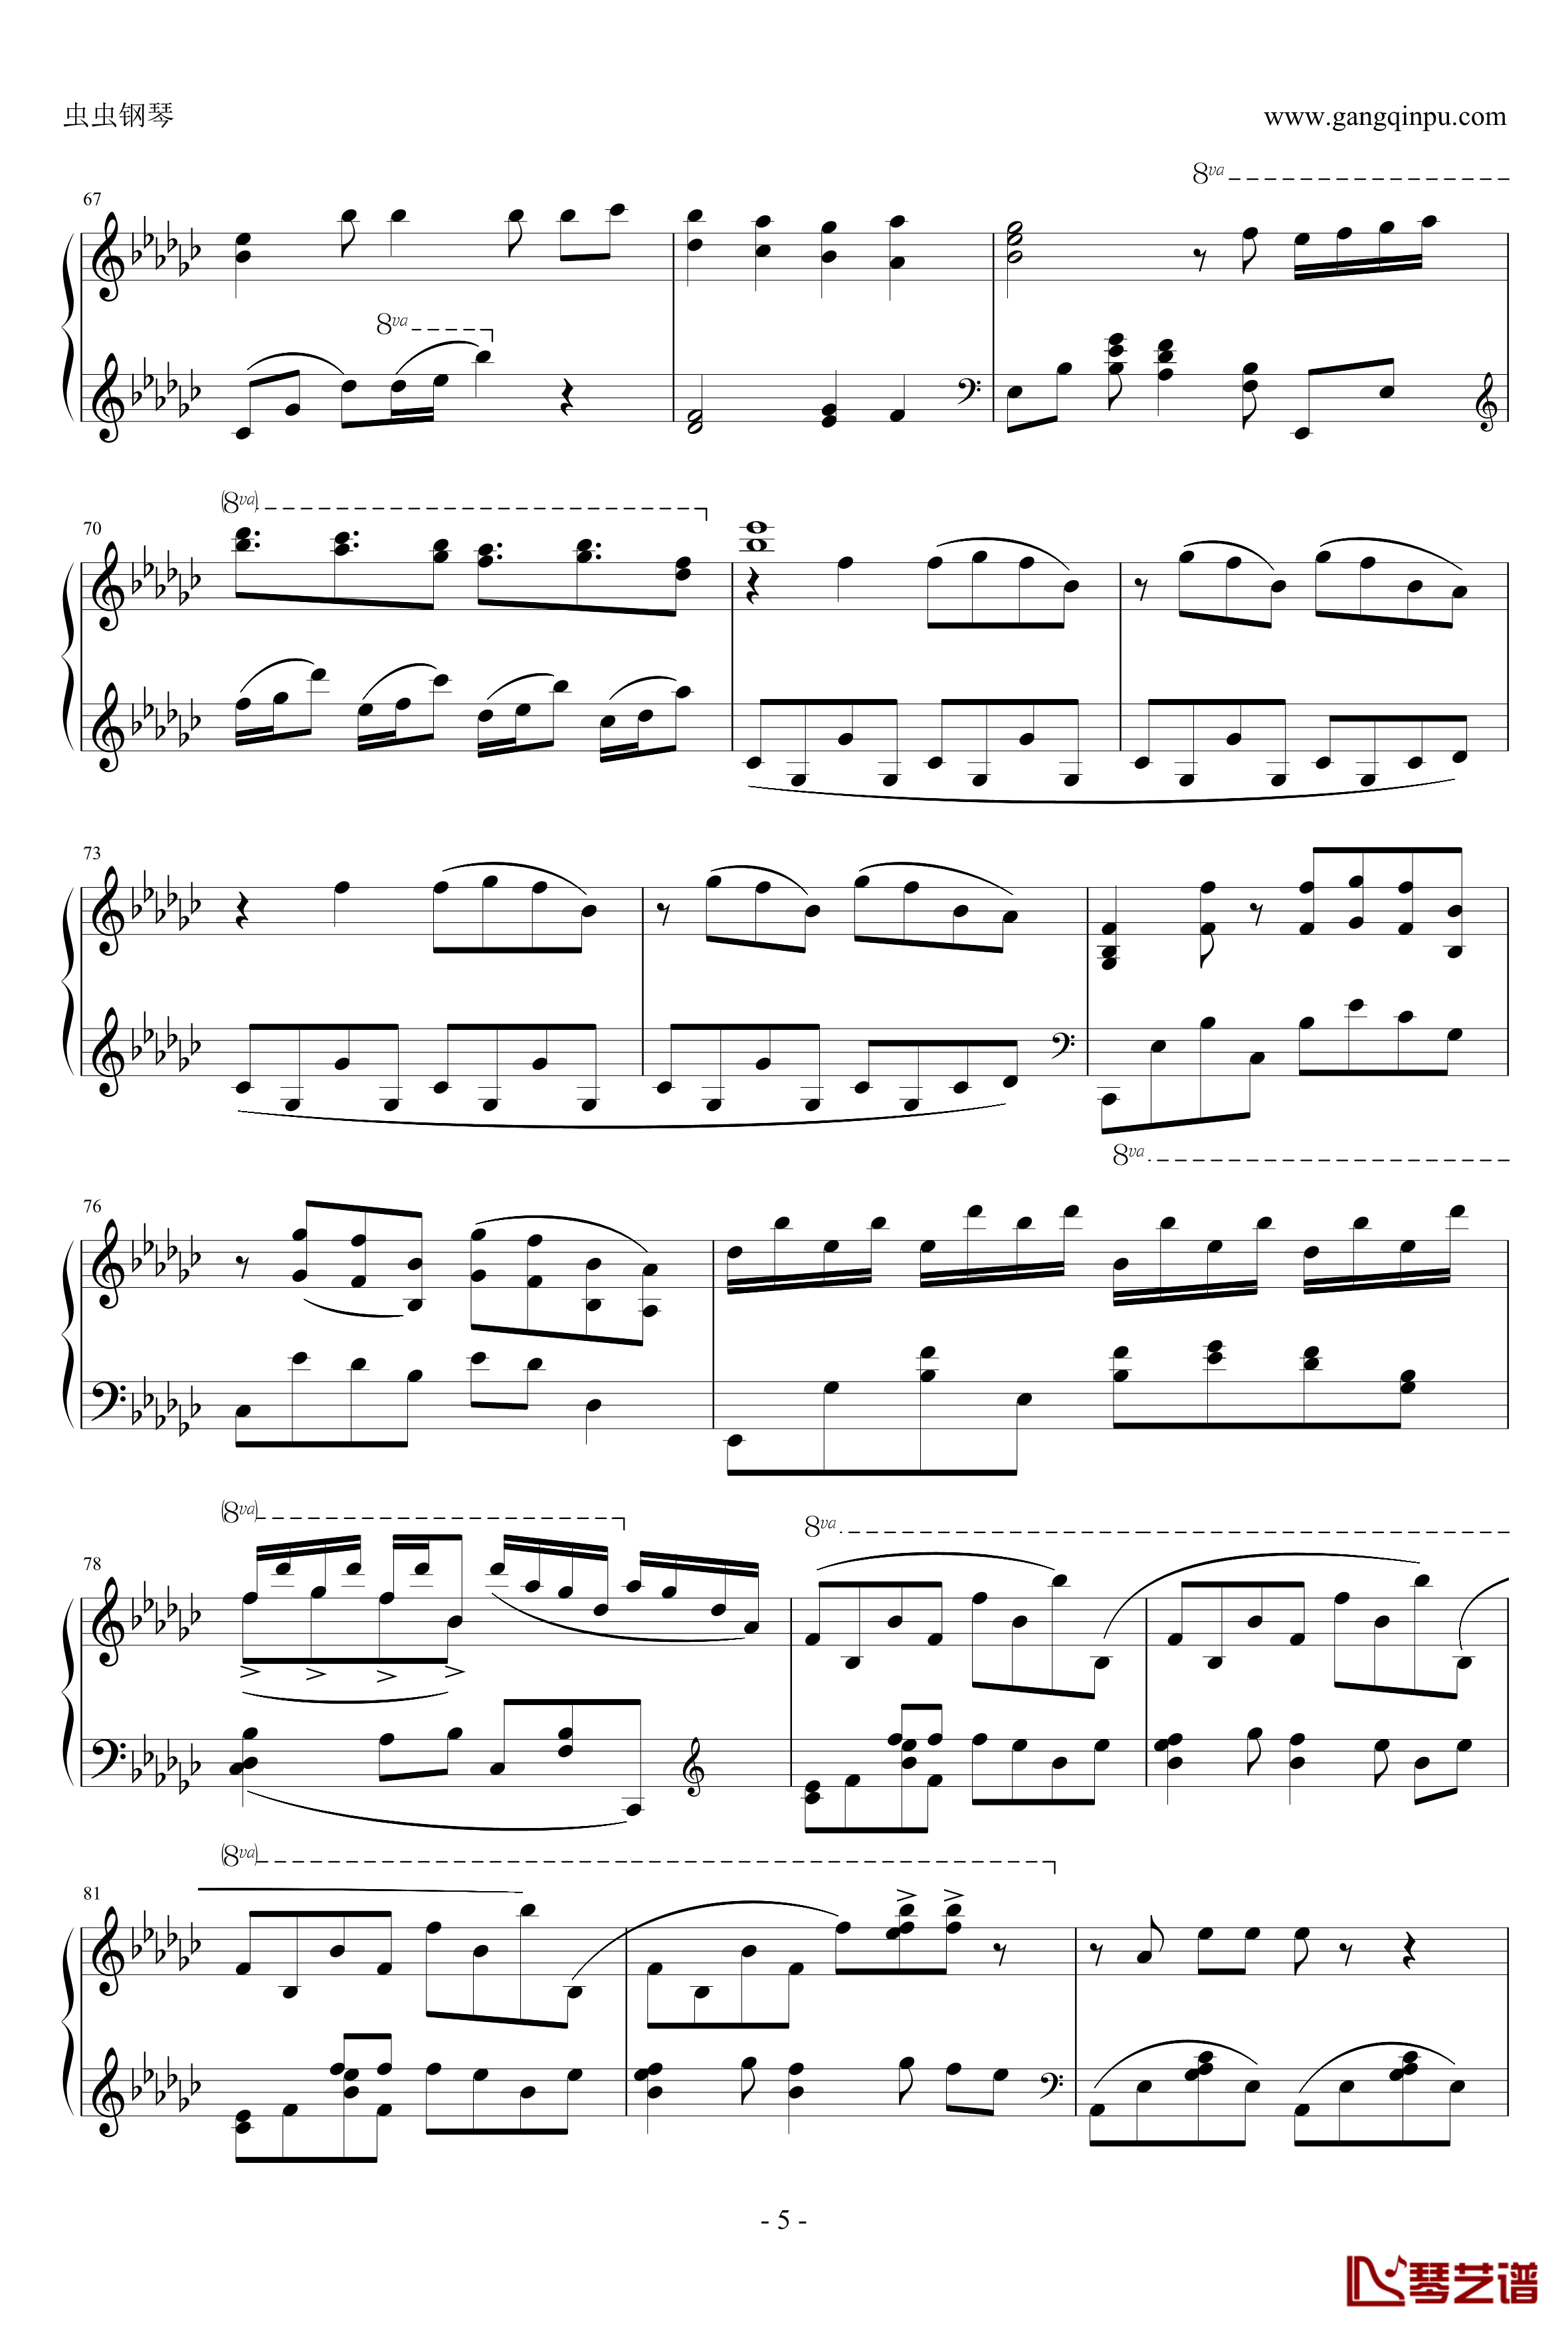 罗密欧与辛德瑞拉钢琴谱-初音ミク-doriko5